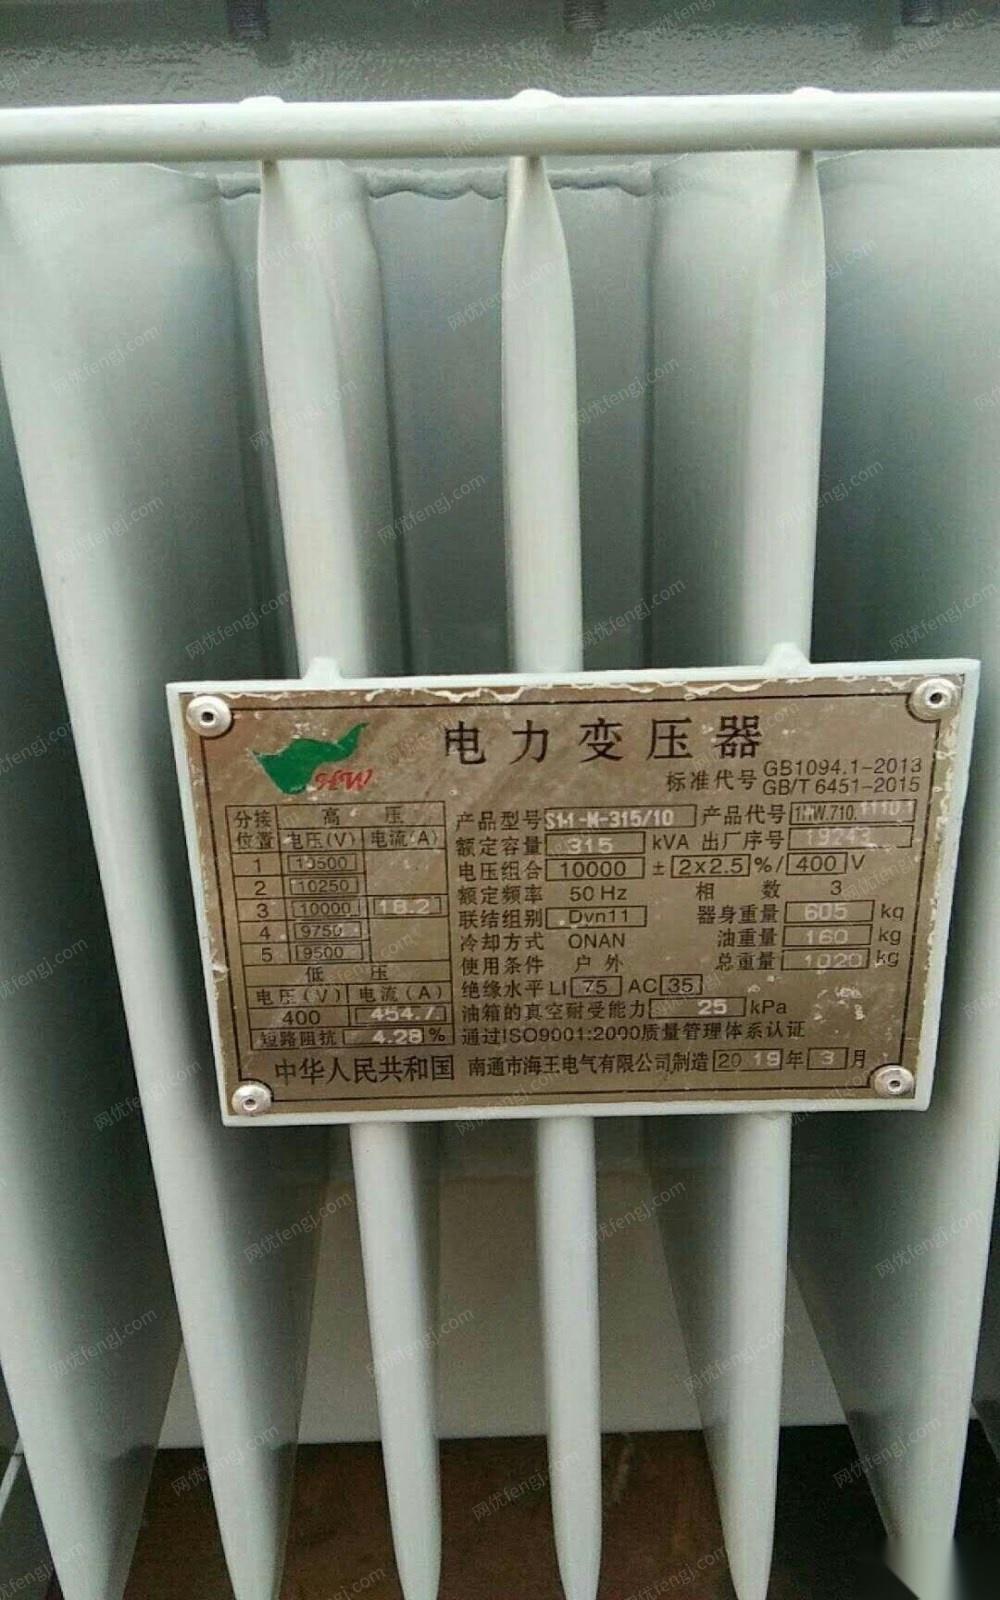 安徽滁州全新南通海王s11-m315变压器出售